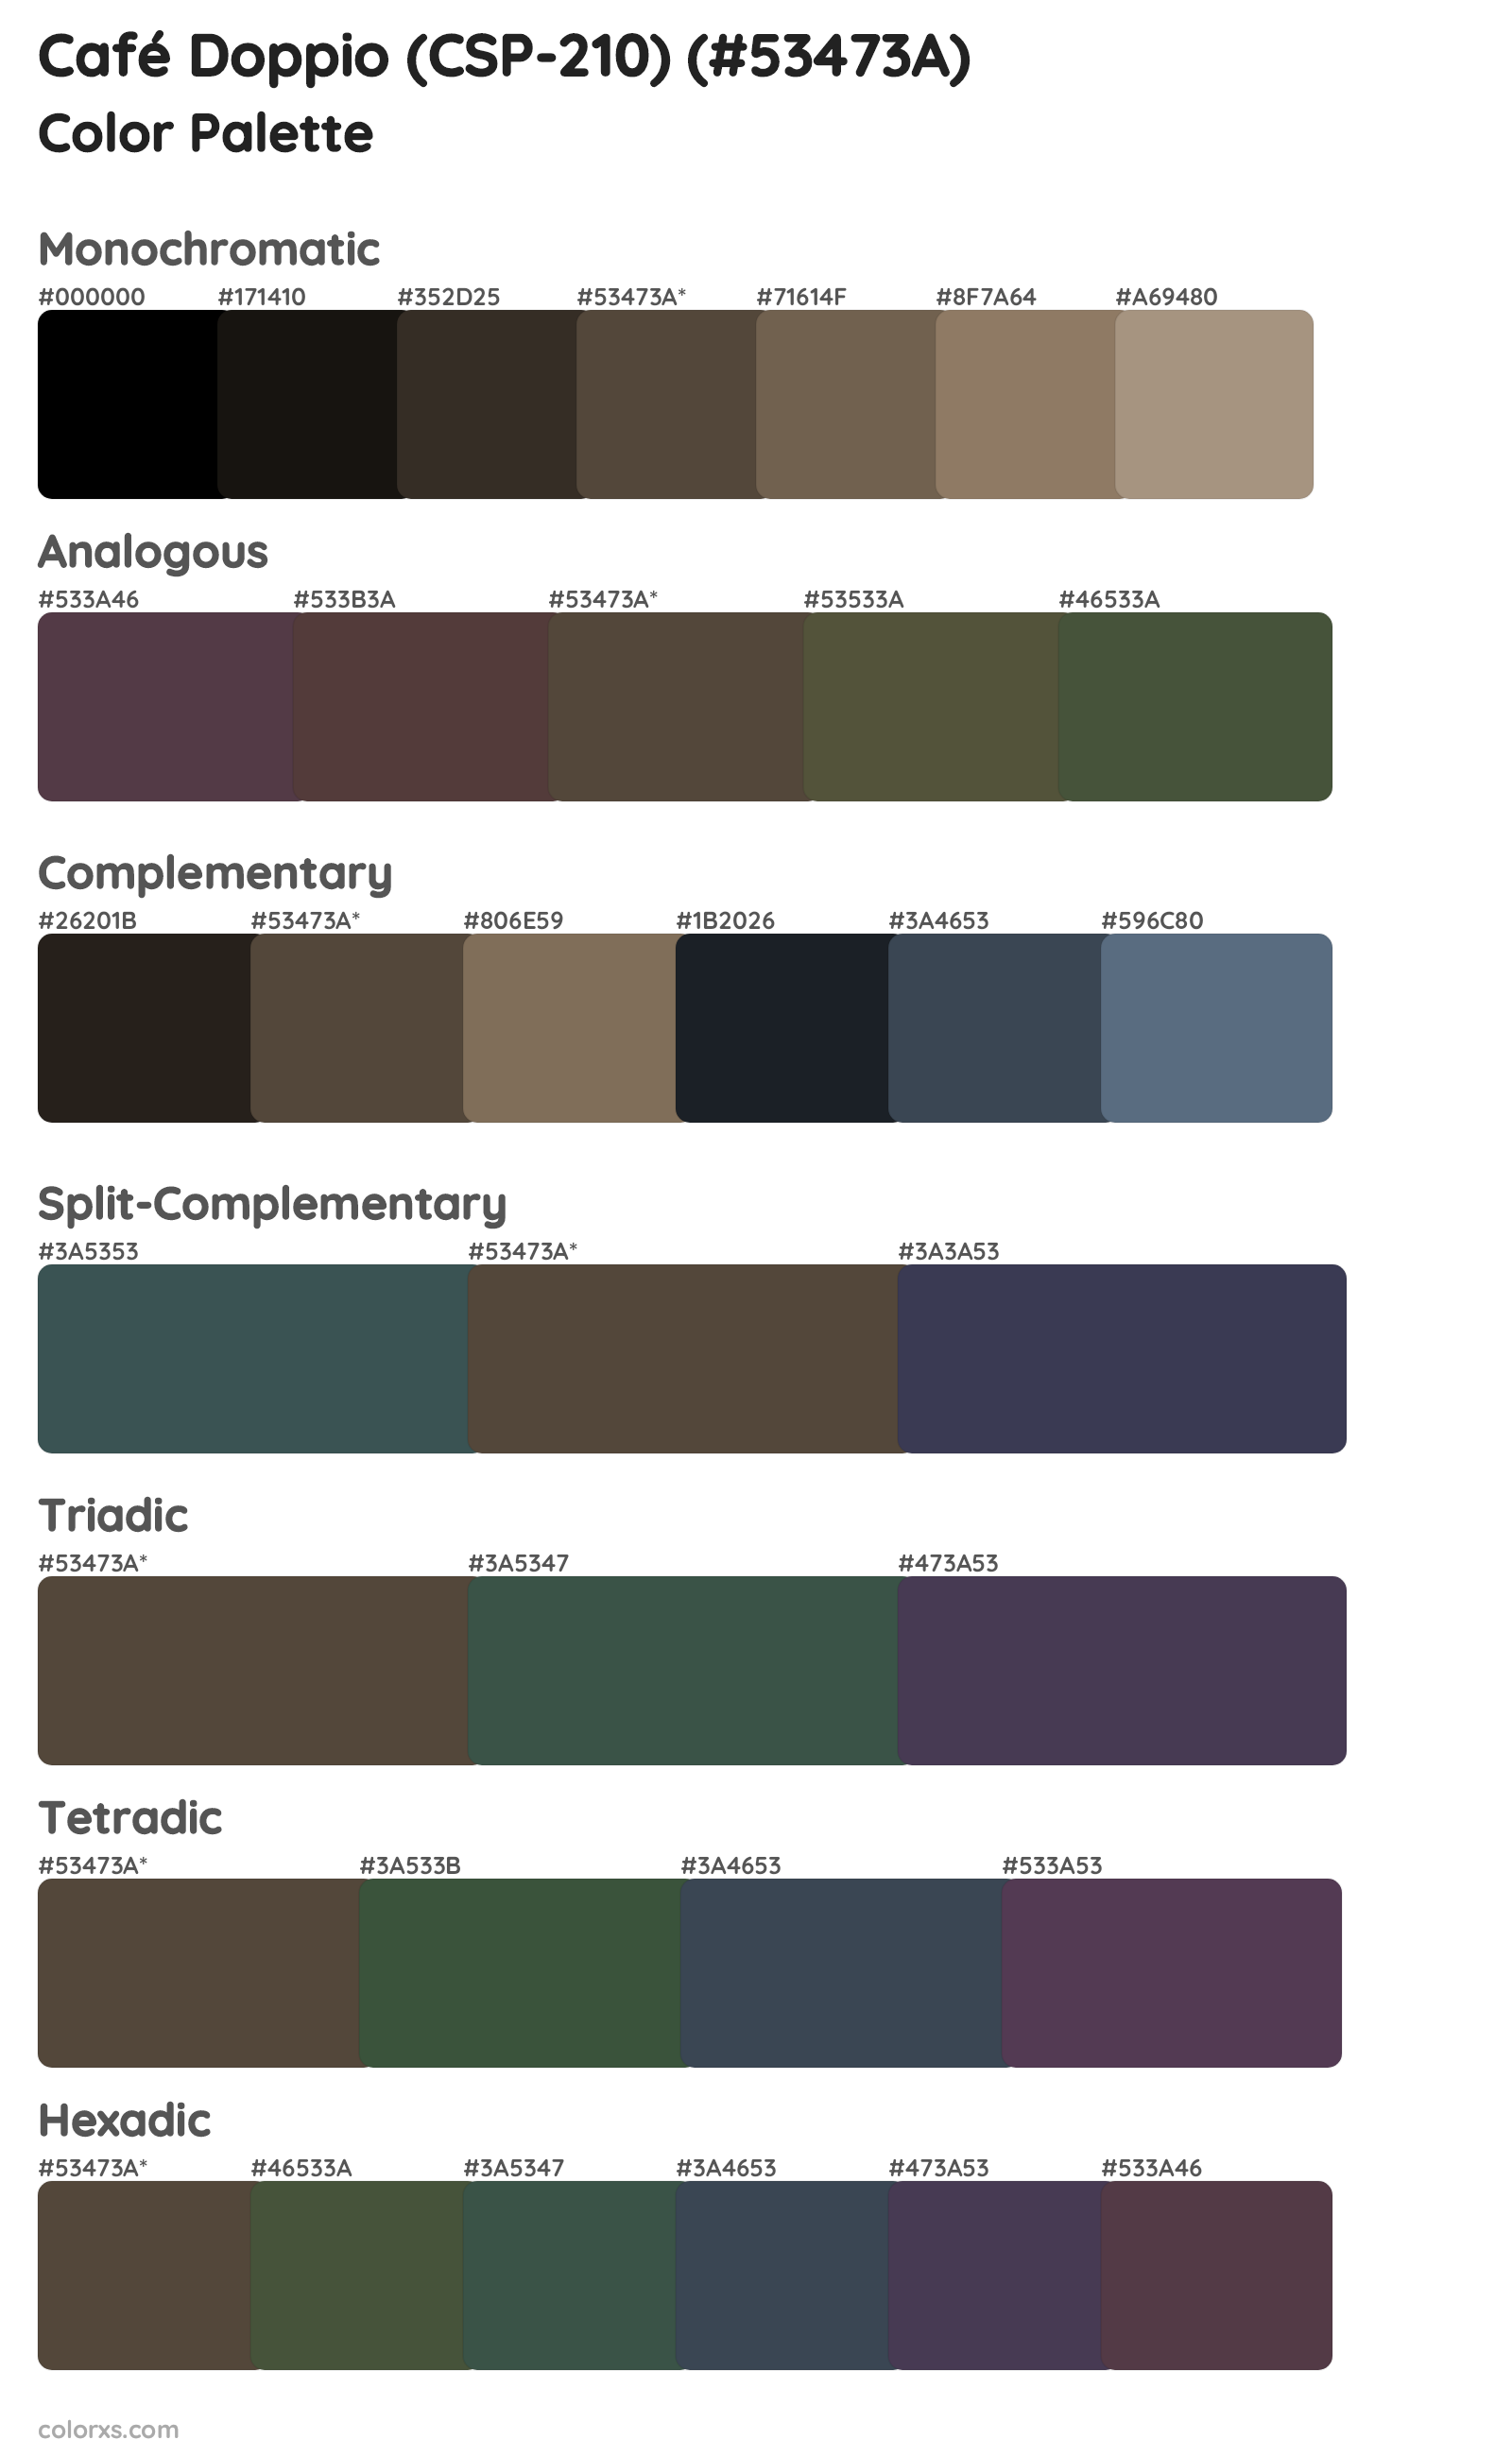 Café Doppio (CSP-210) Color Scheme Palettes